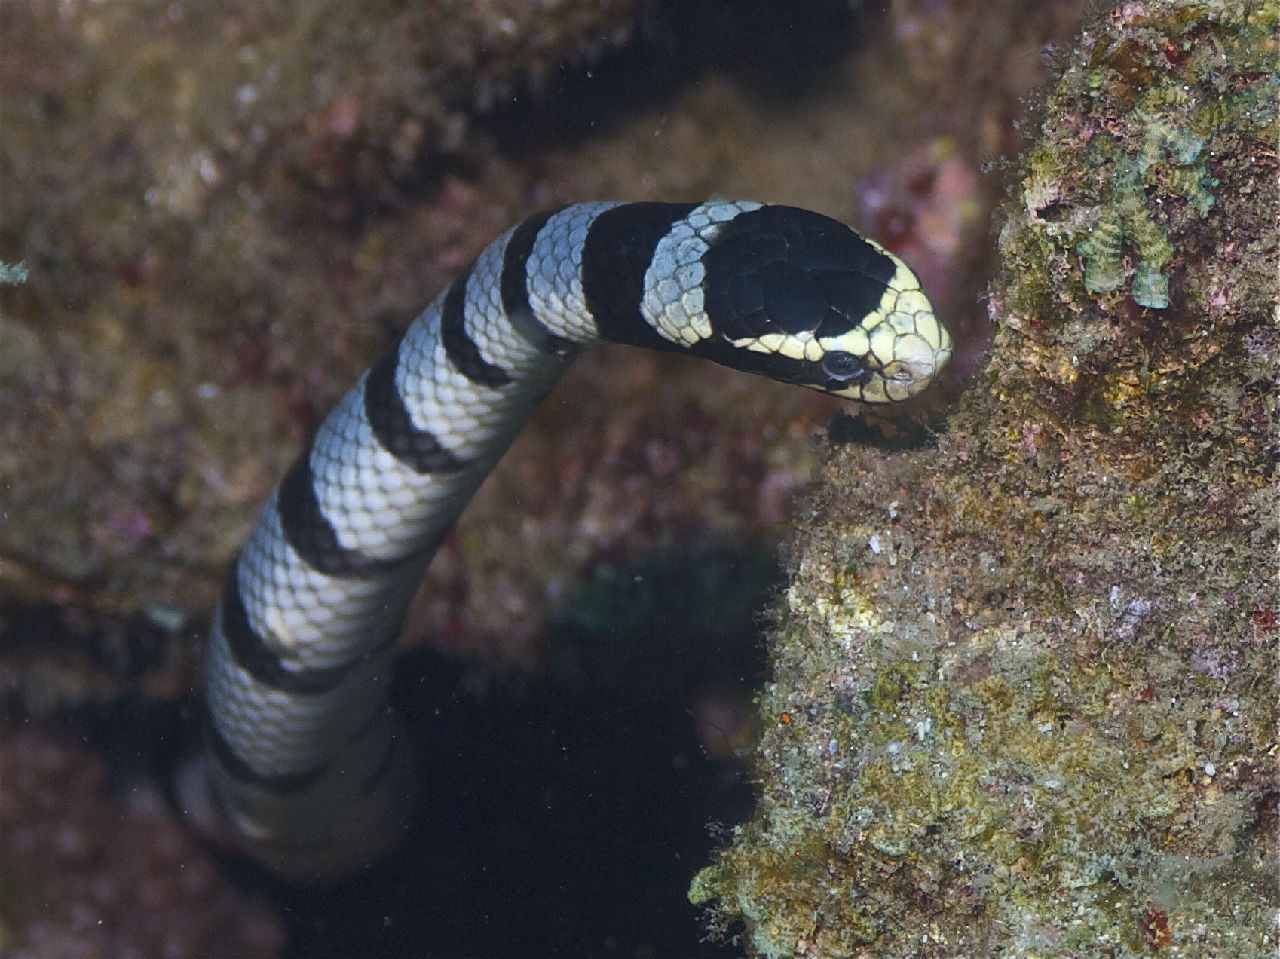 银环海蛇图片